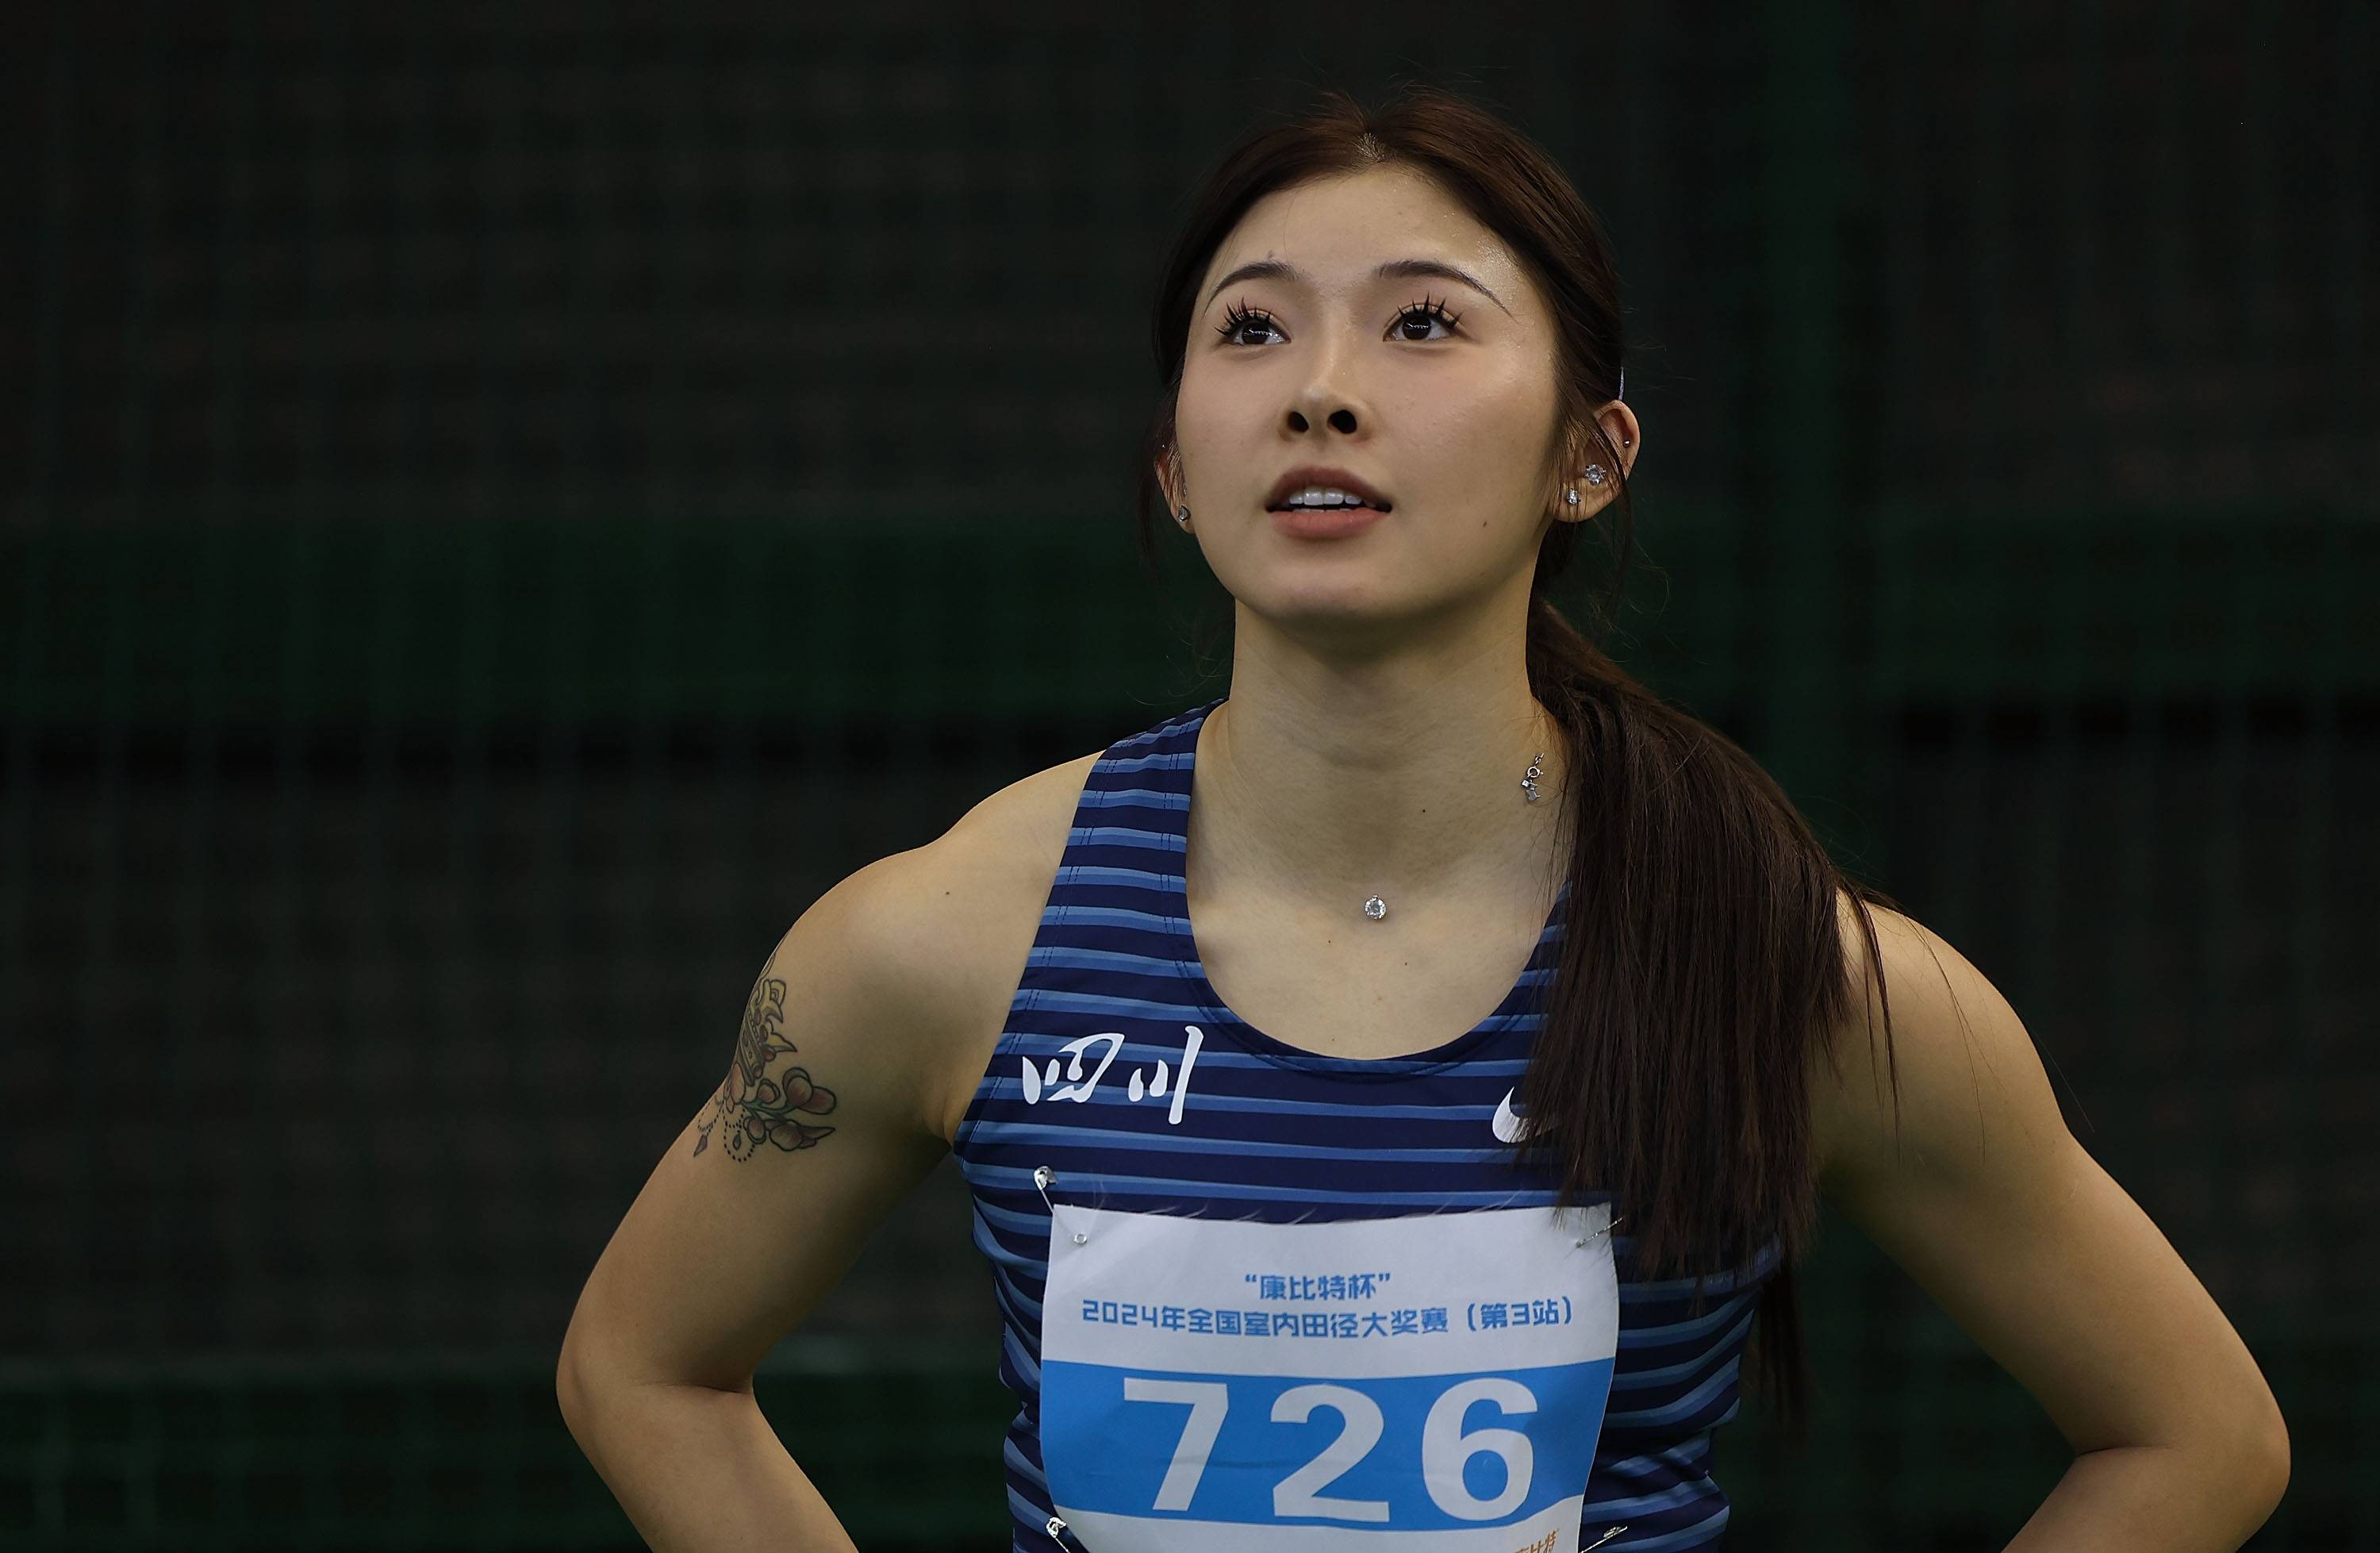 吴艳妮60米栏决赛刷新个人纪录夺冠,赛后发文:技术打磨无止境